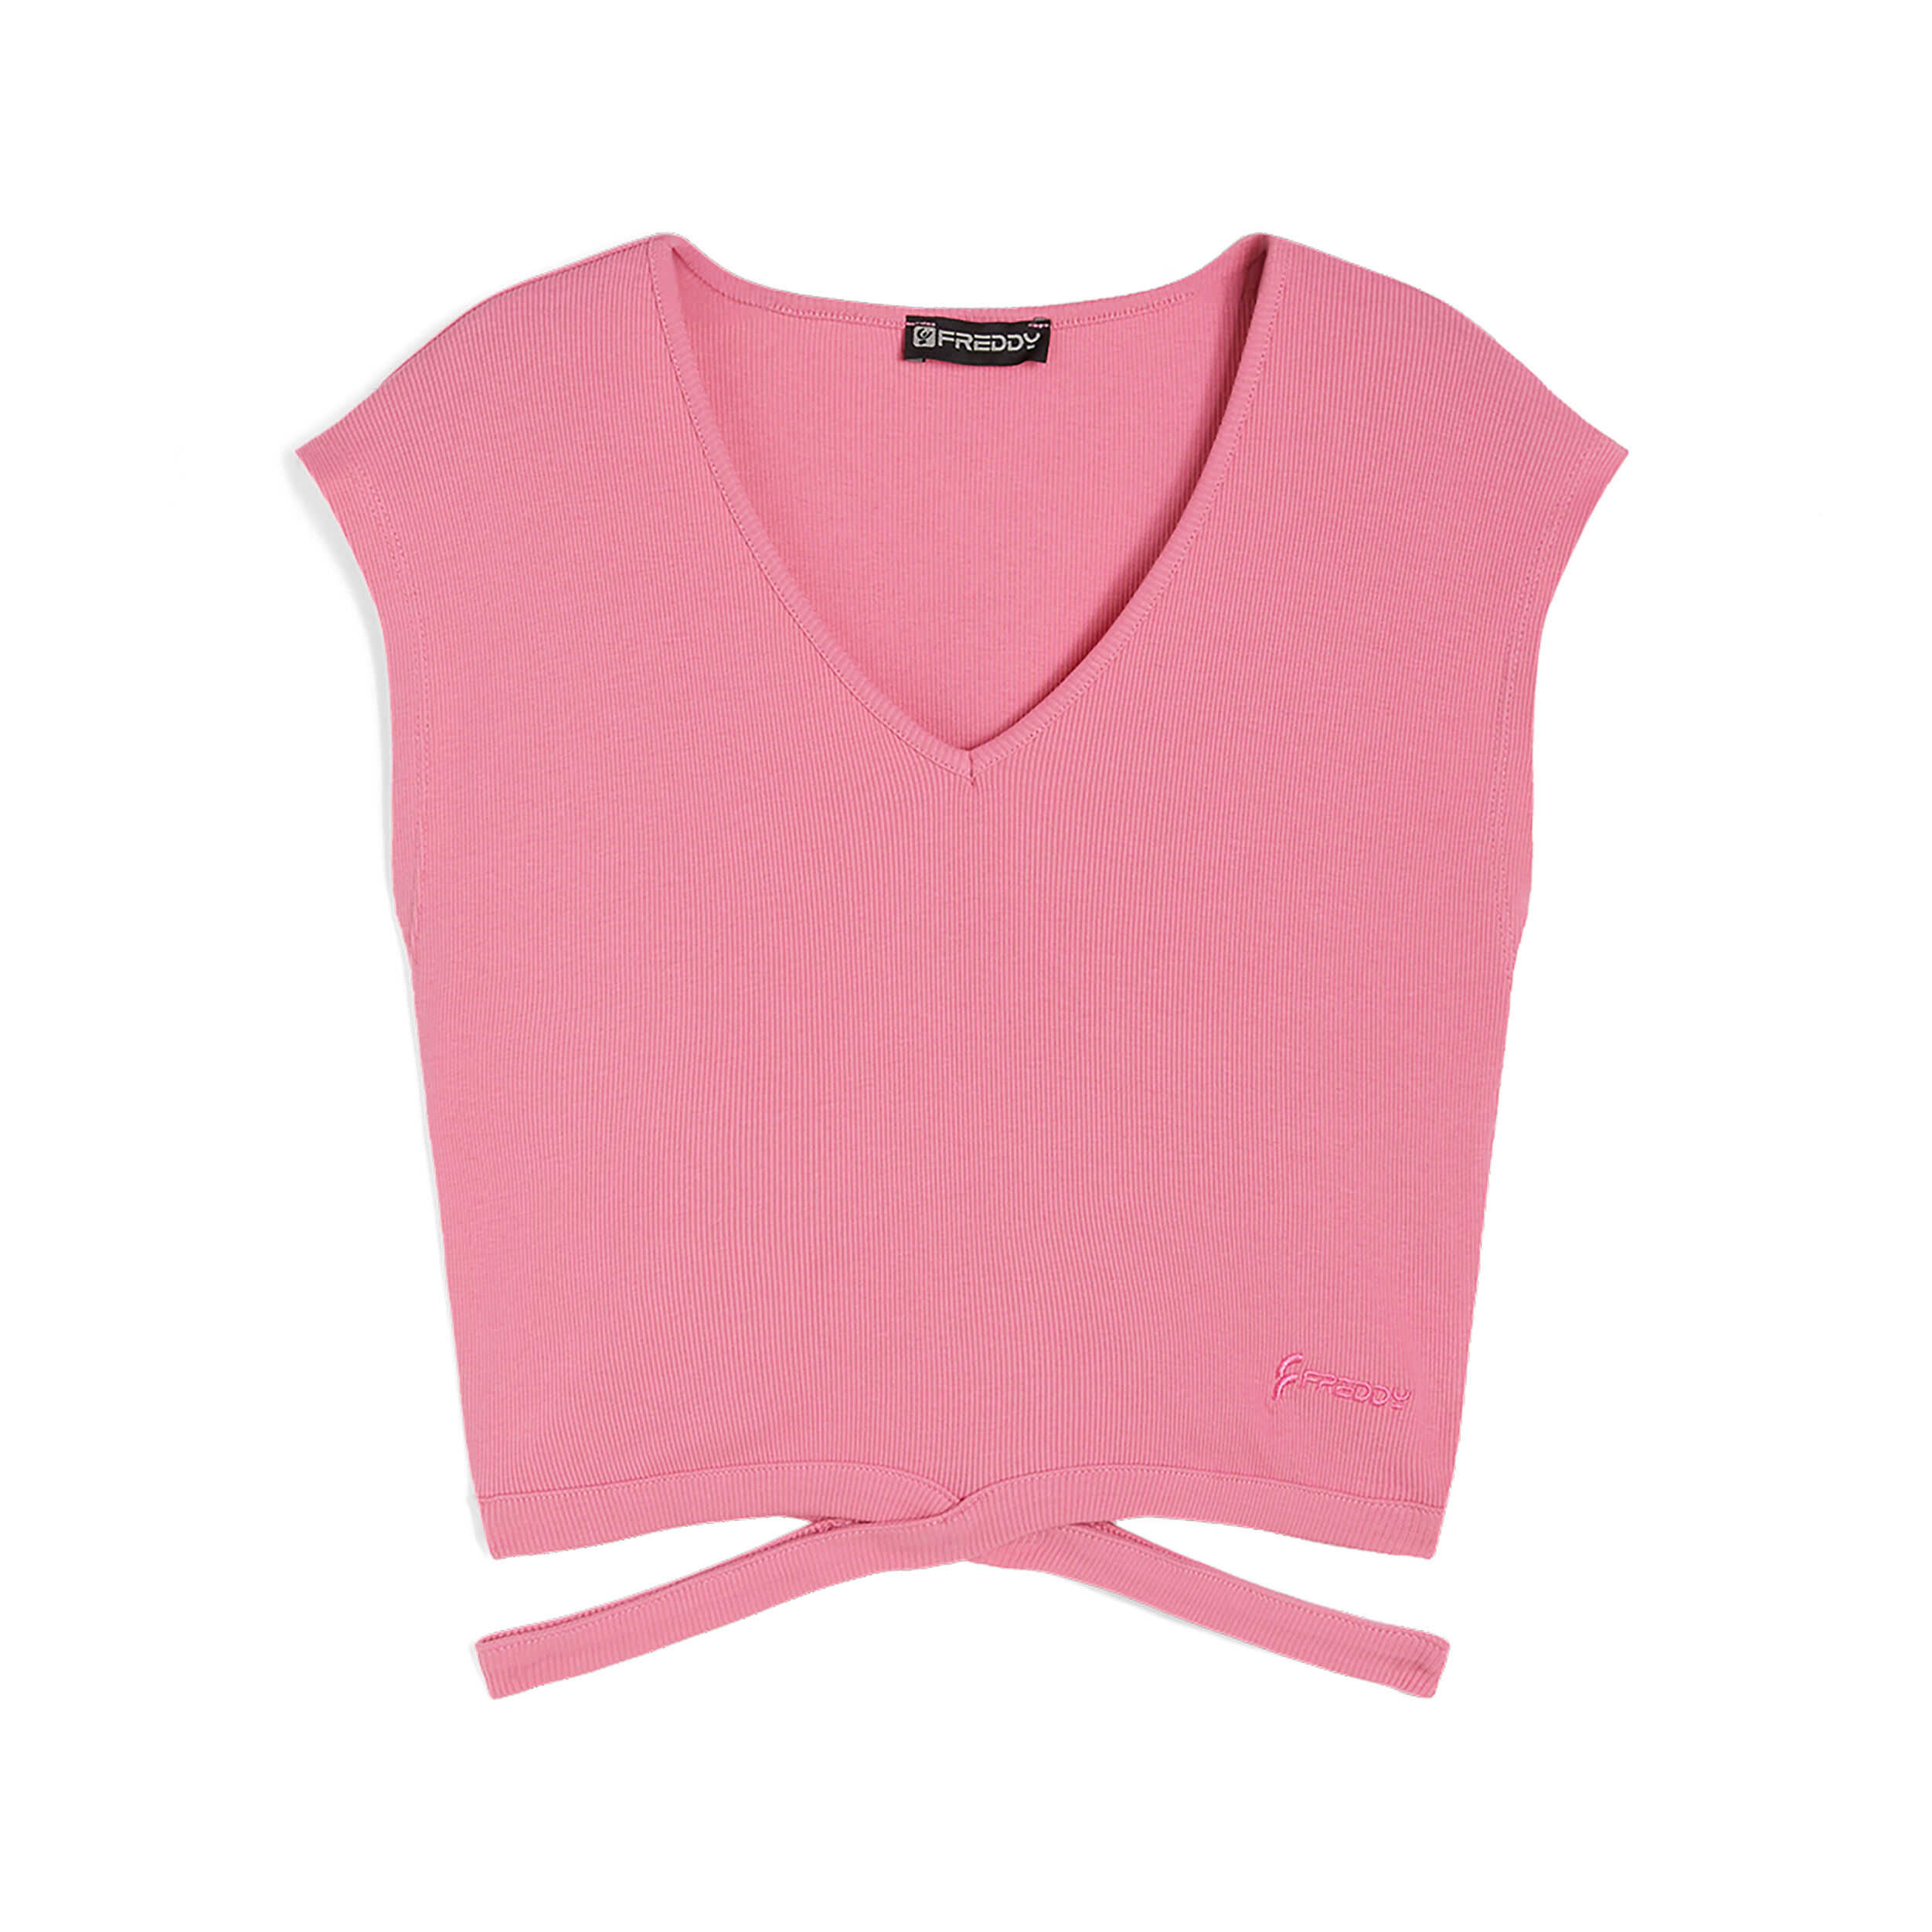 Freddy T-shirt slim fit in costina con gioco di incroci sul fondo Pink Carnation Donna Extra Small